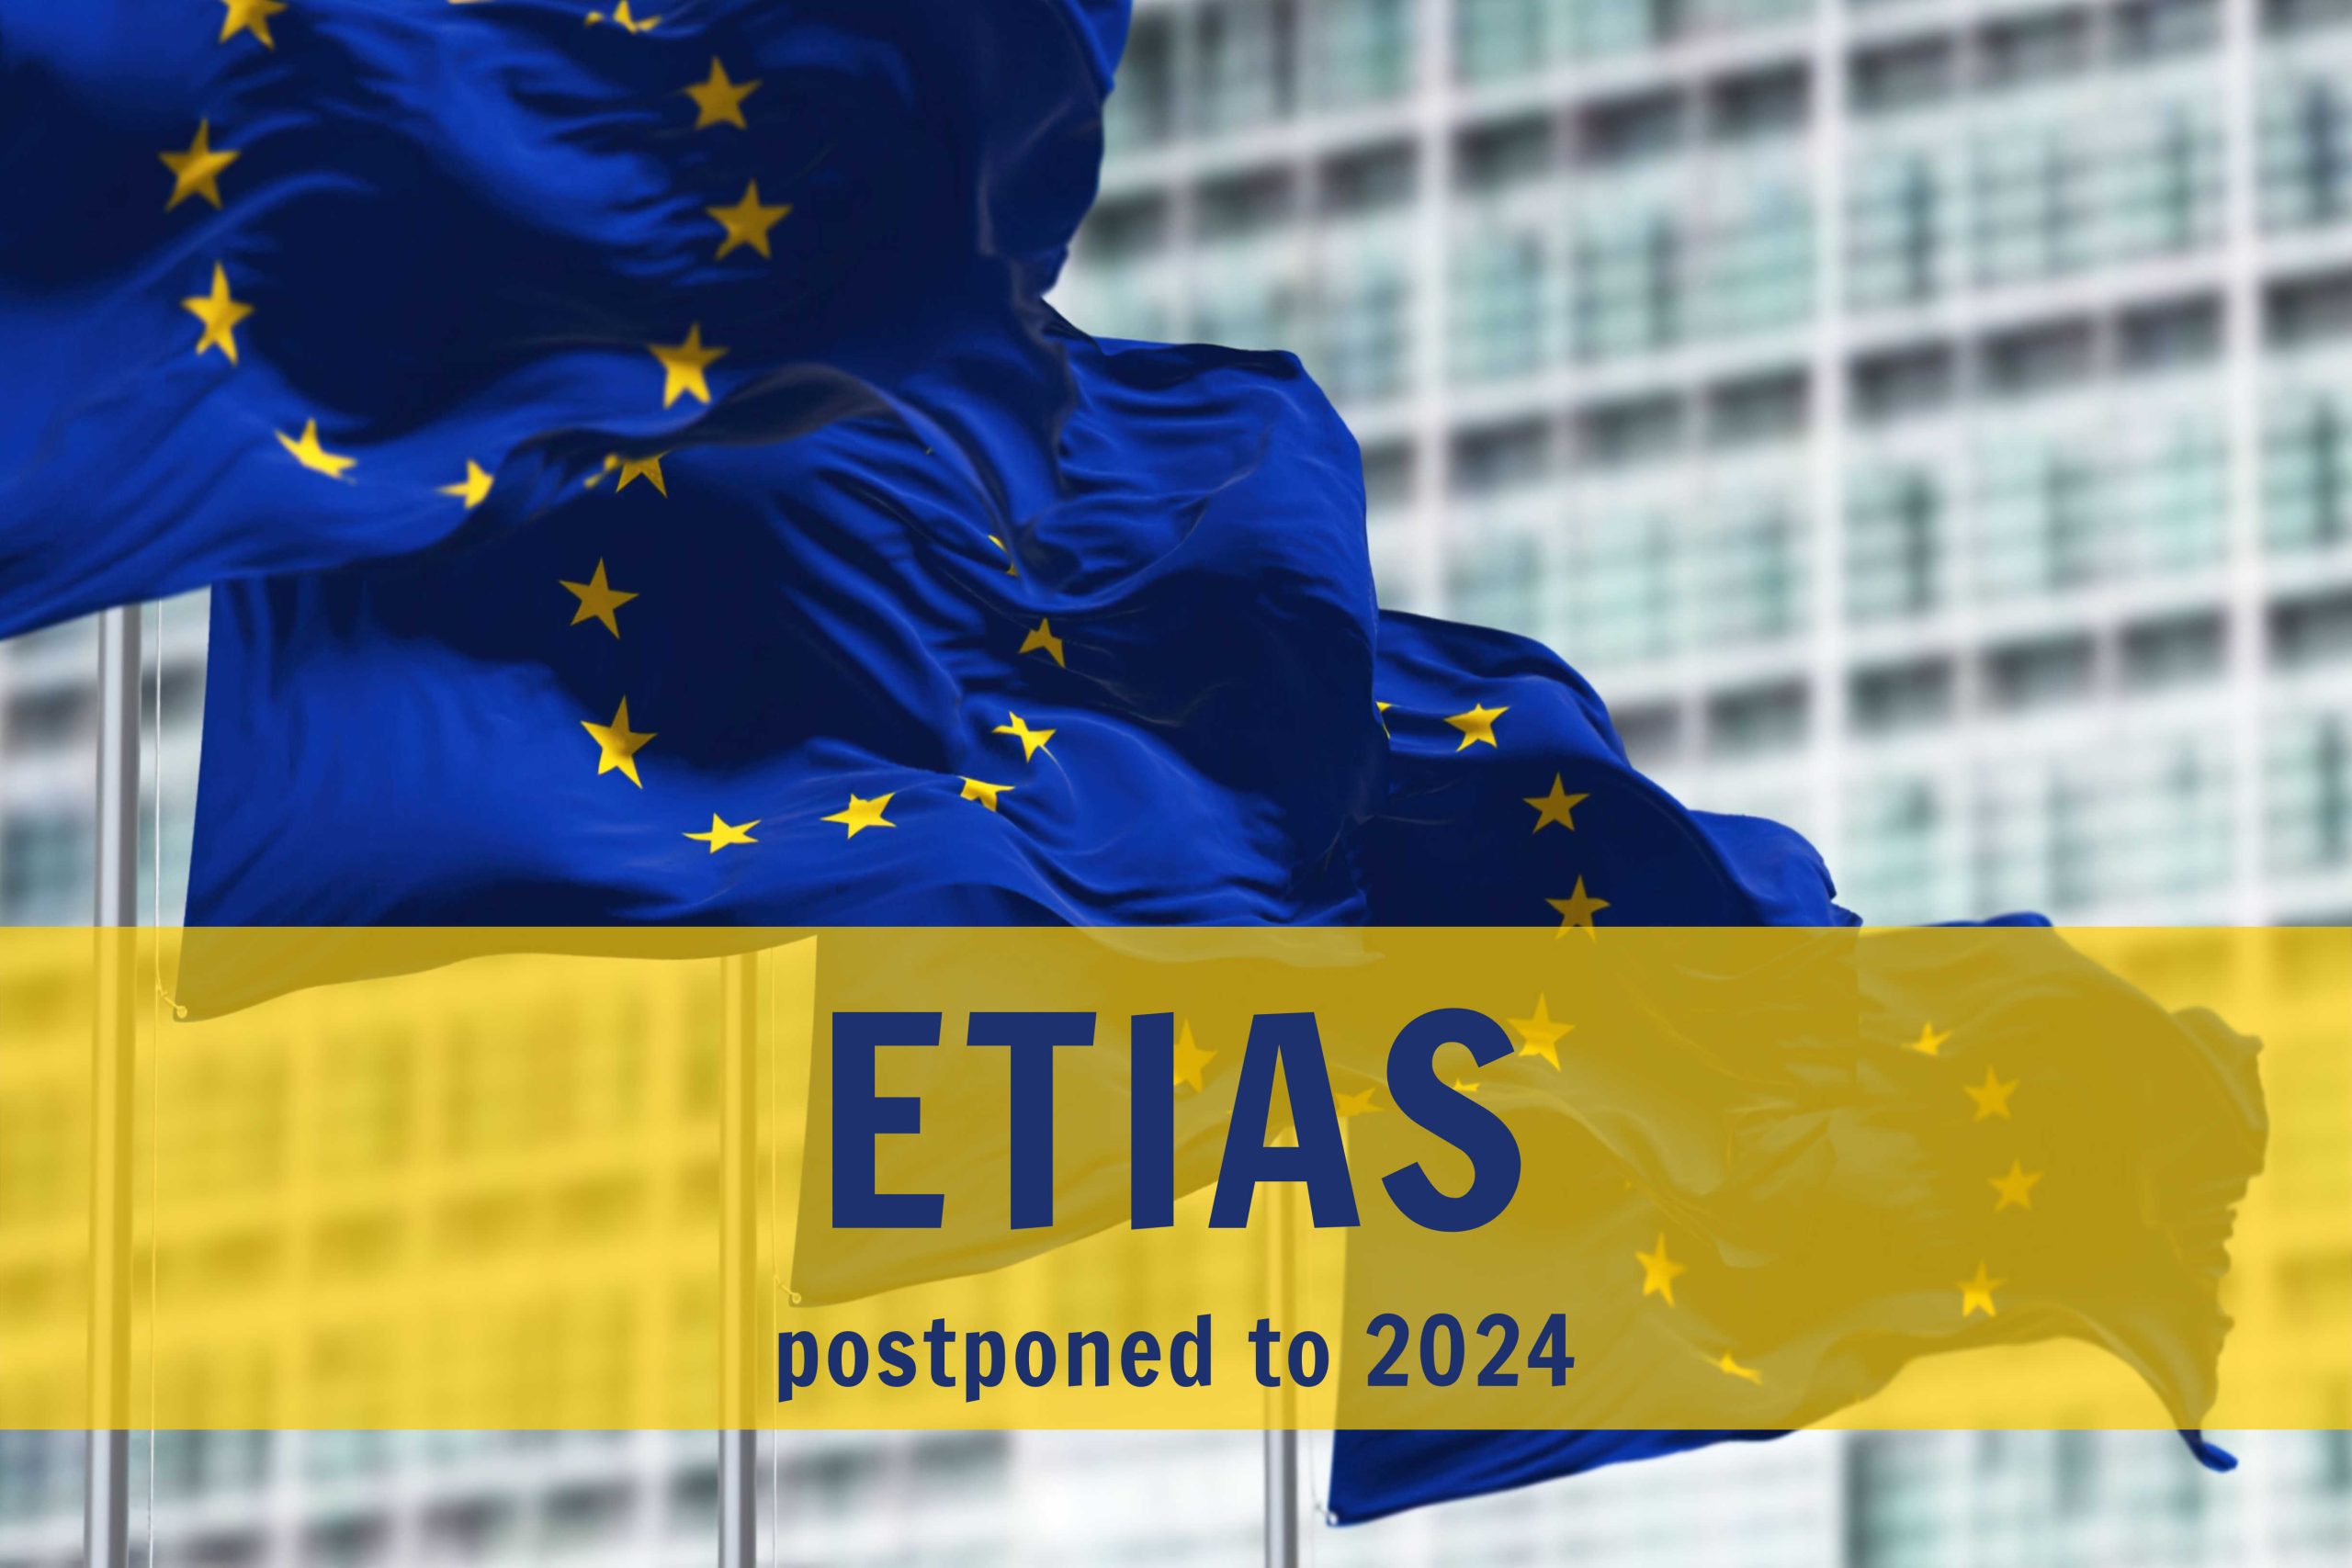 Launch of ETIAS delayed until 2024